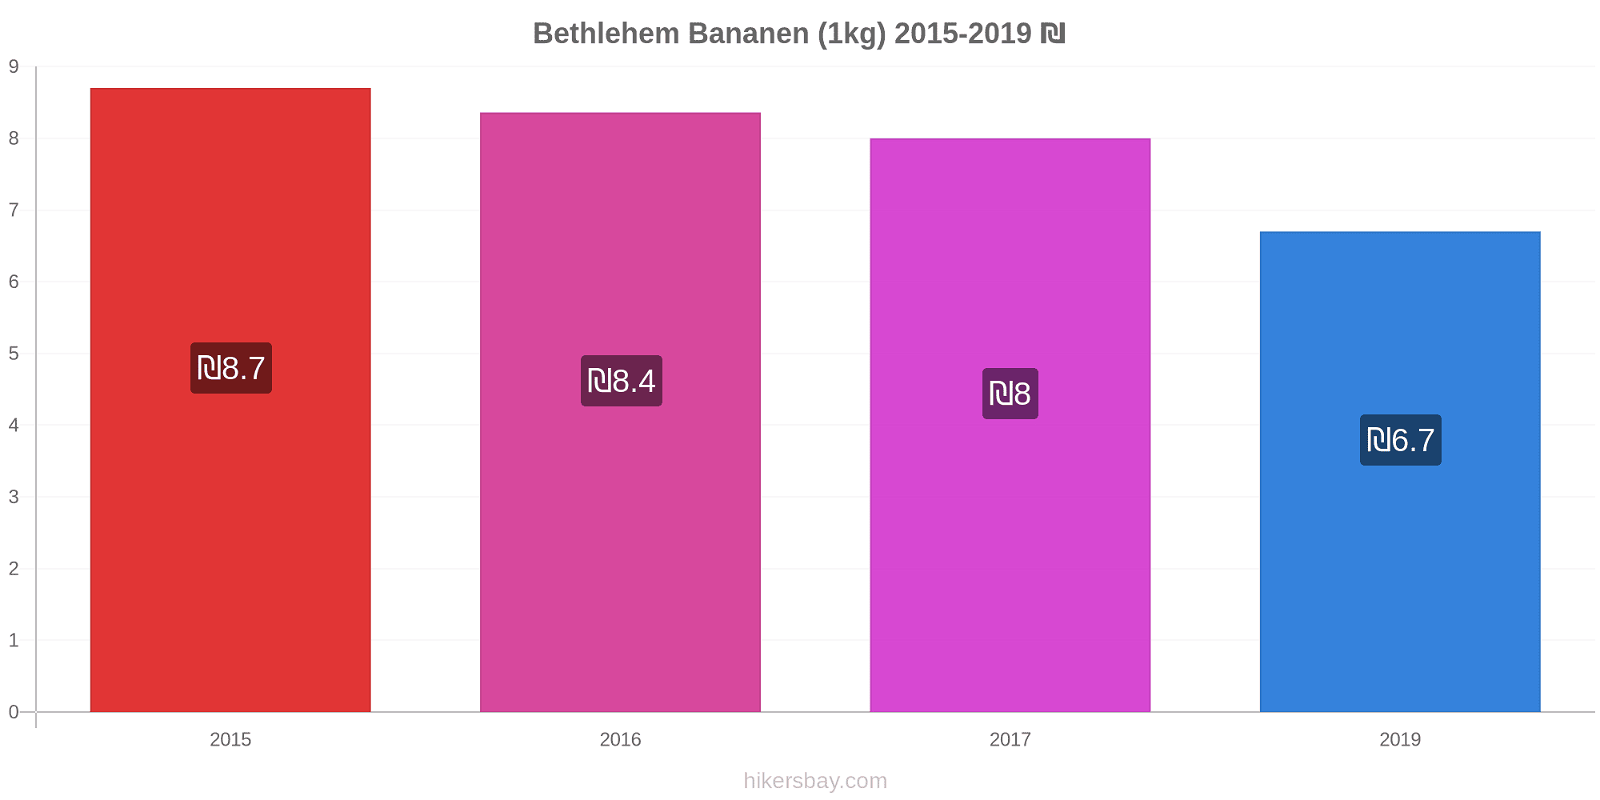 Bethlehem prijswijzigingen Banaan (1kg) hikersbay.com